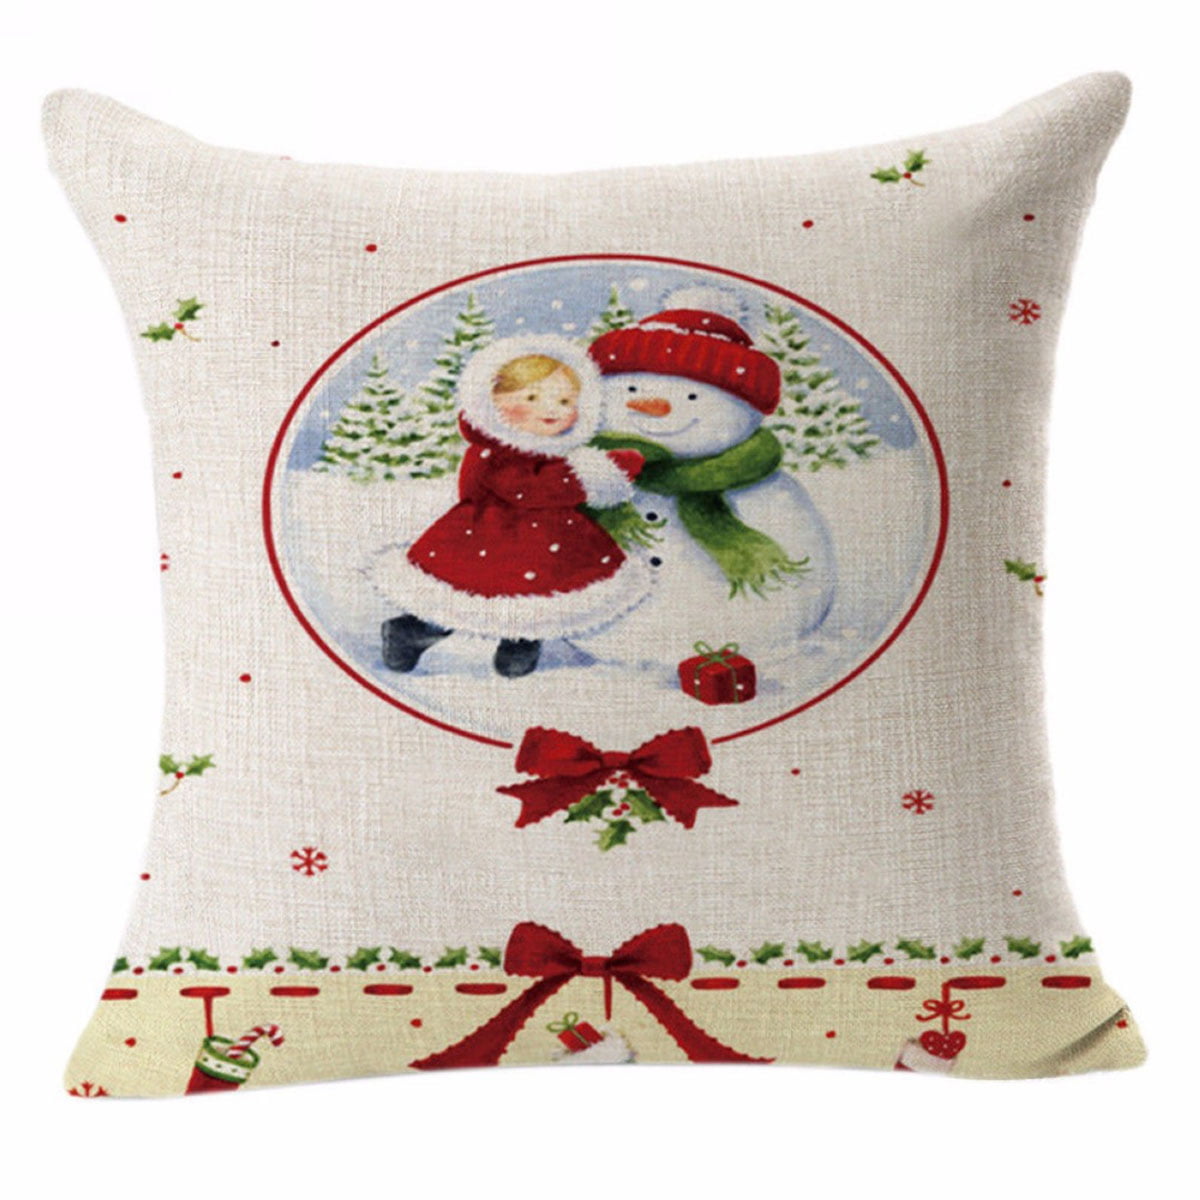 Christmas Linen Cushion Cover Throw Pillow Case Xmas Home Decor Festive Gift